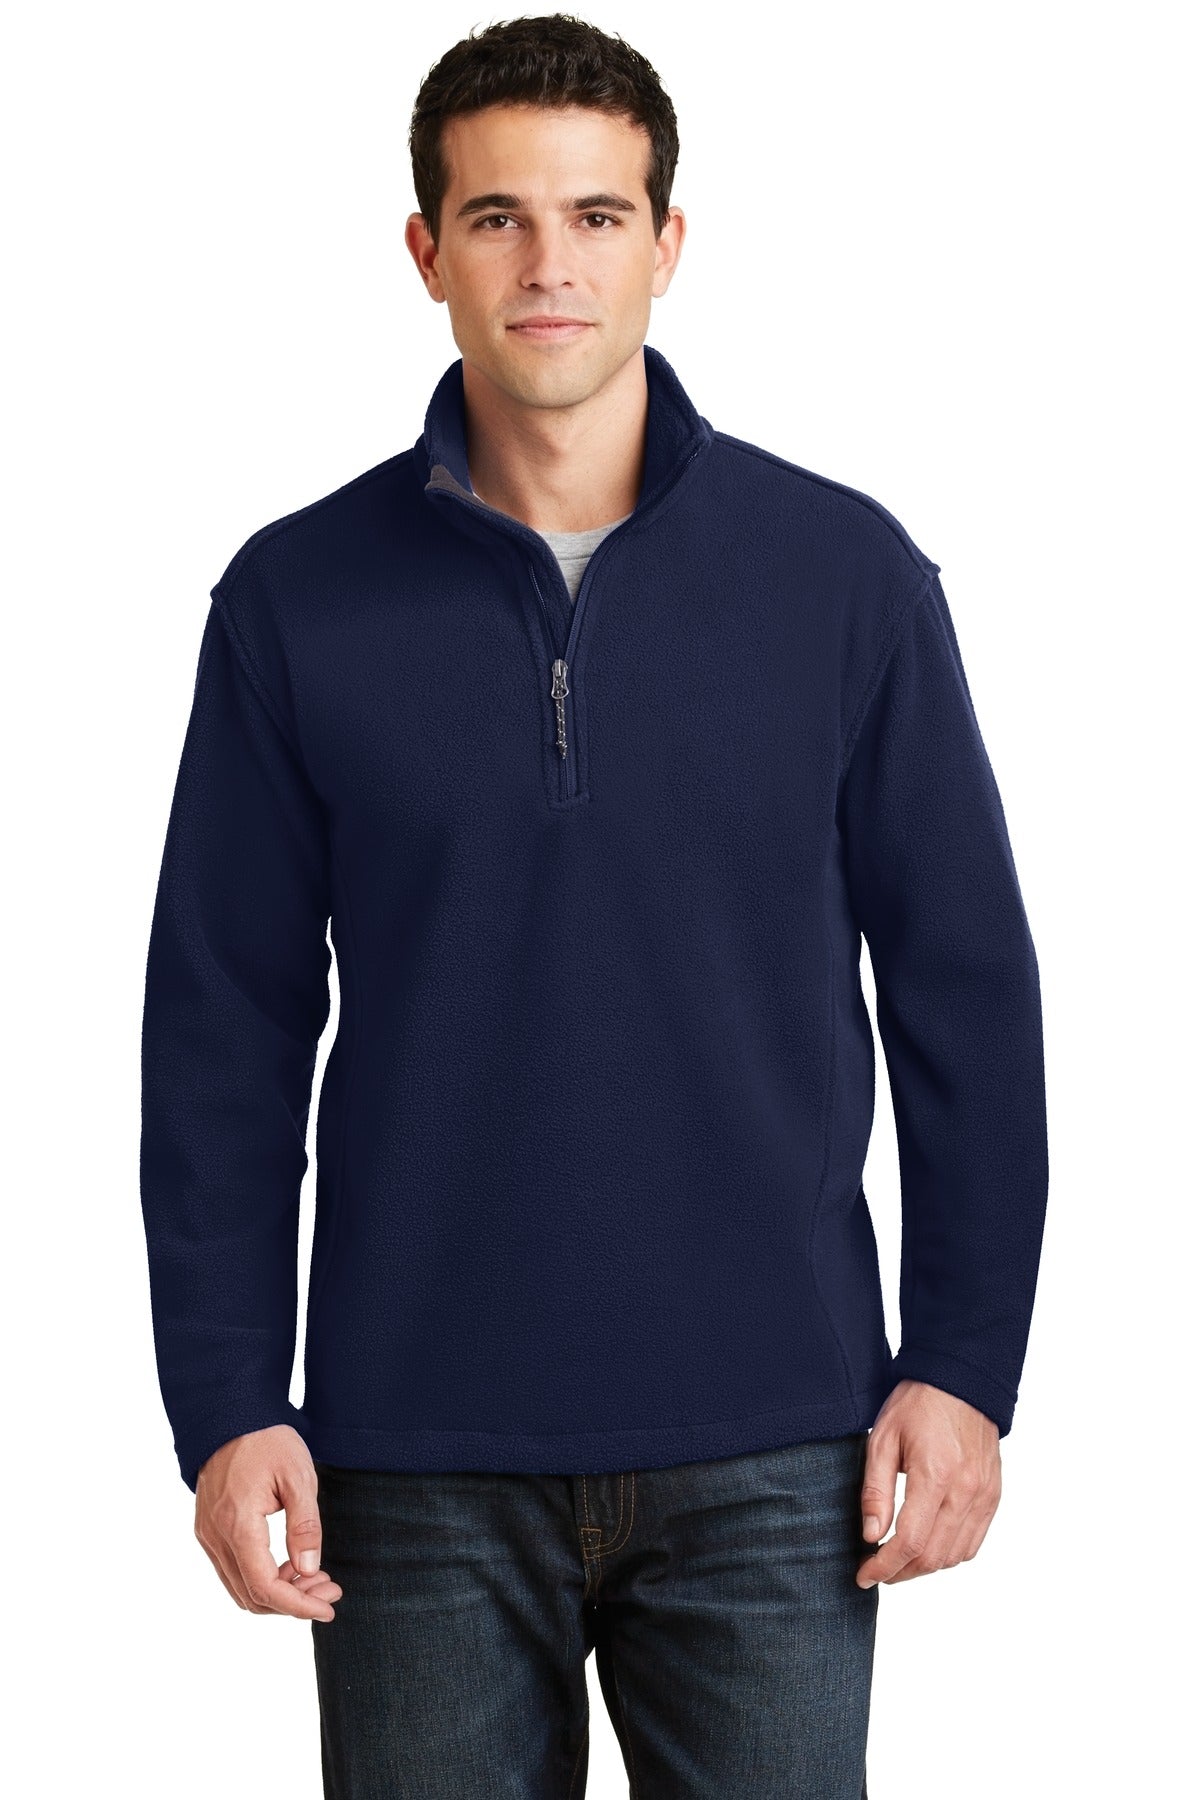 Port Authority® Value Fleece 1/4-Zip Pullover. F218